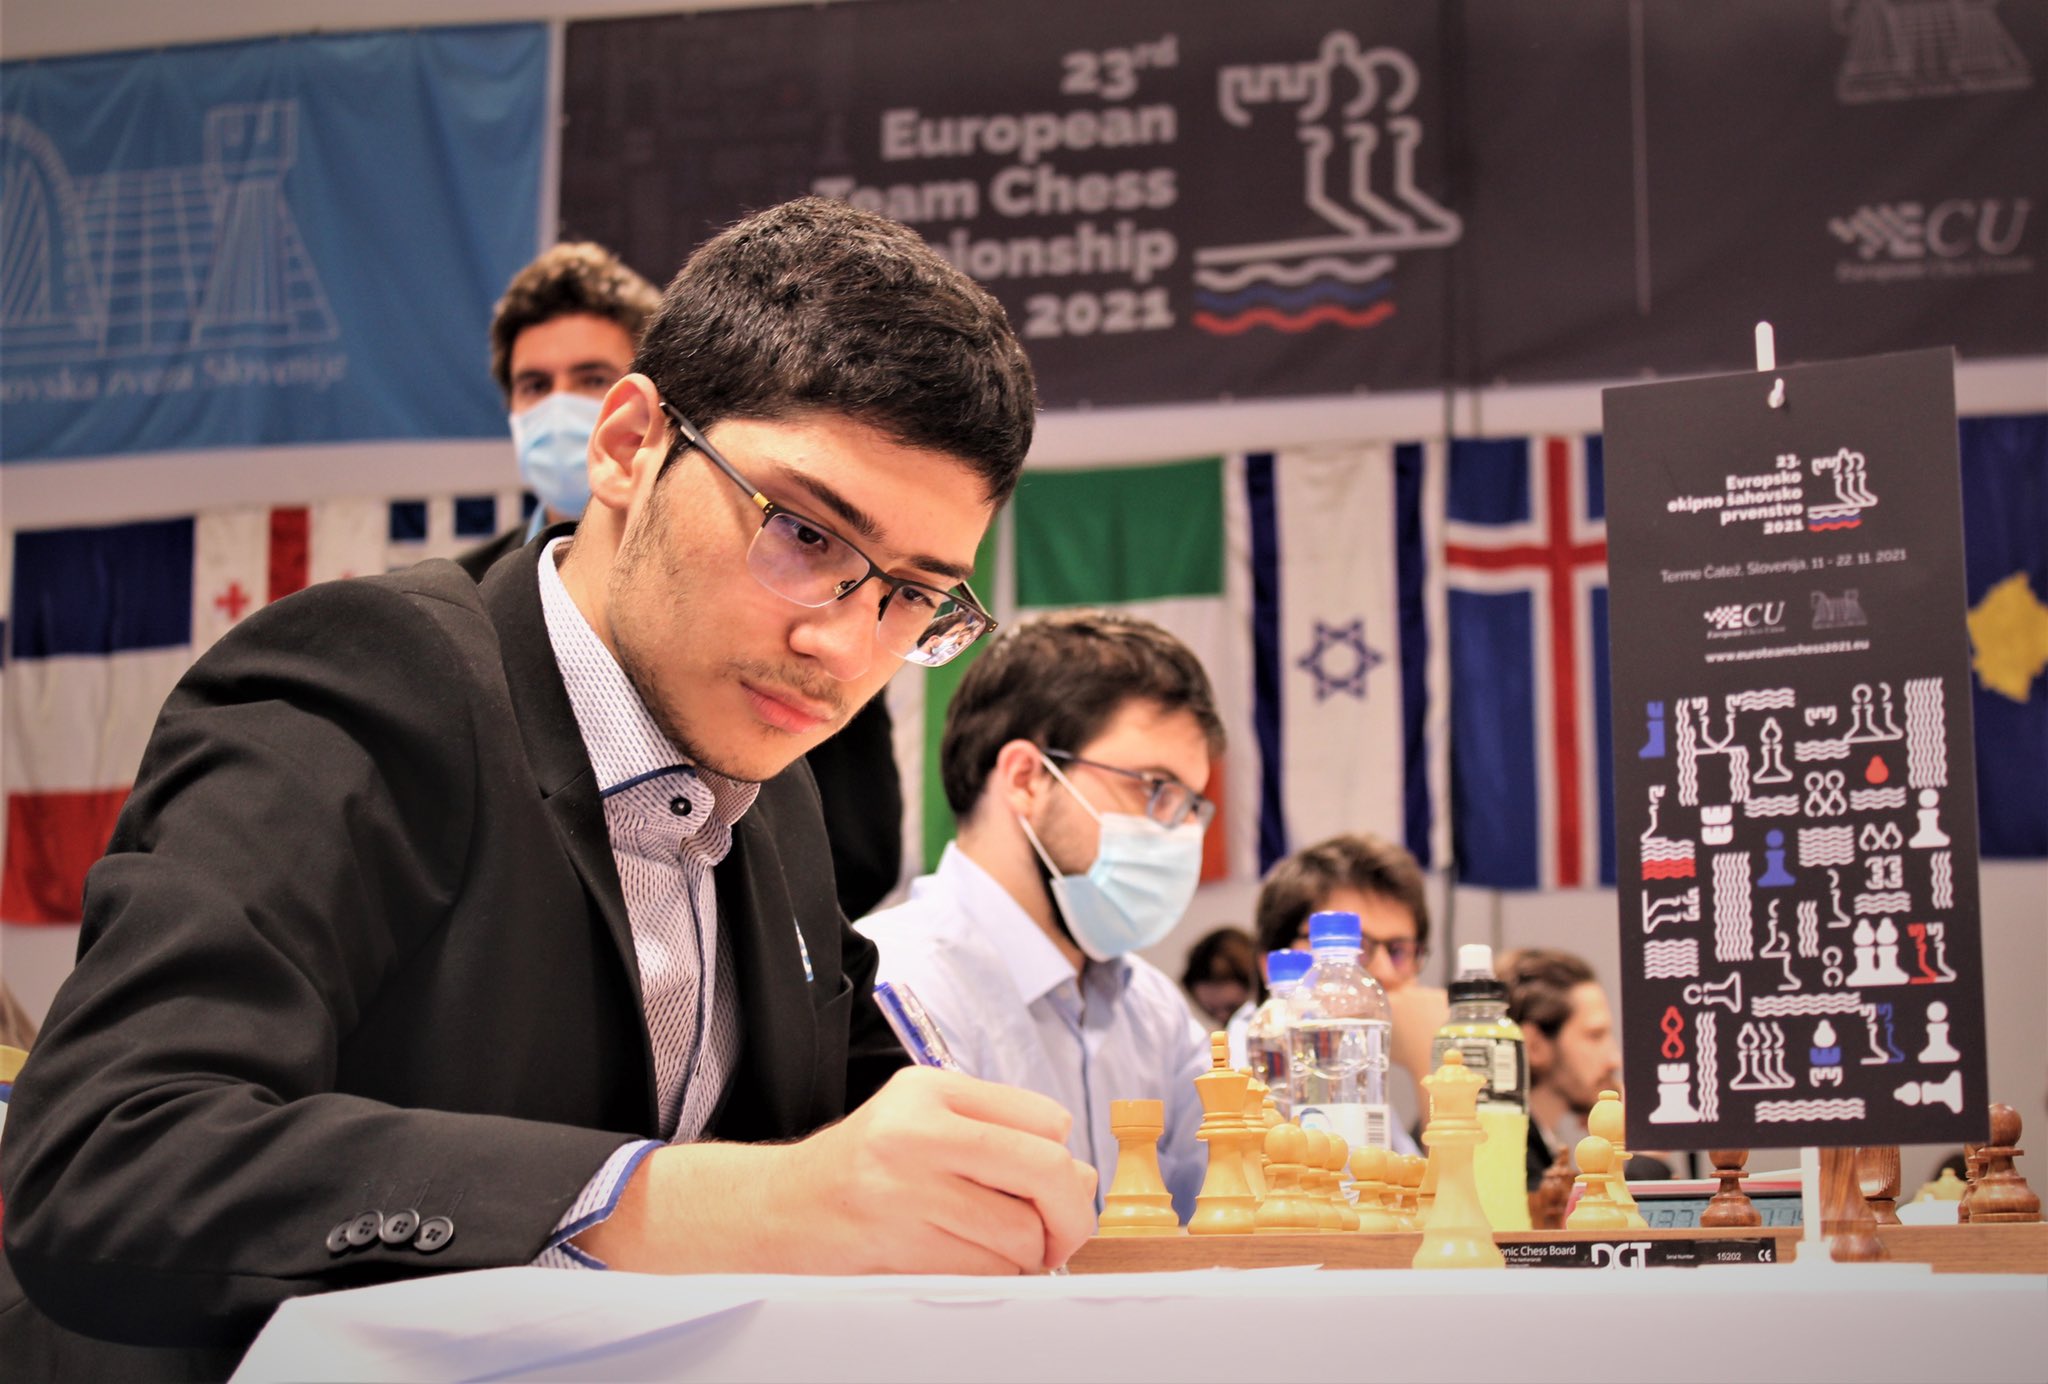 Congratulations to Firouzja Alireza - European Chess Union